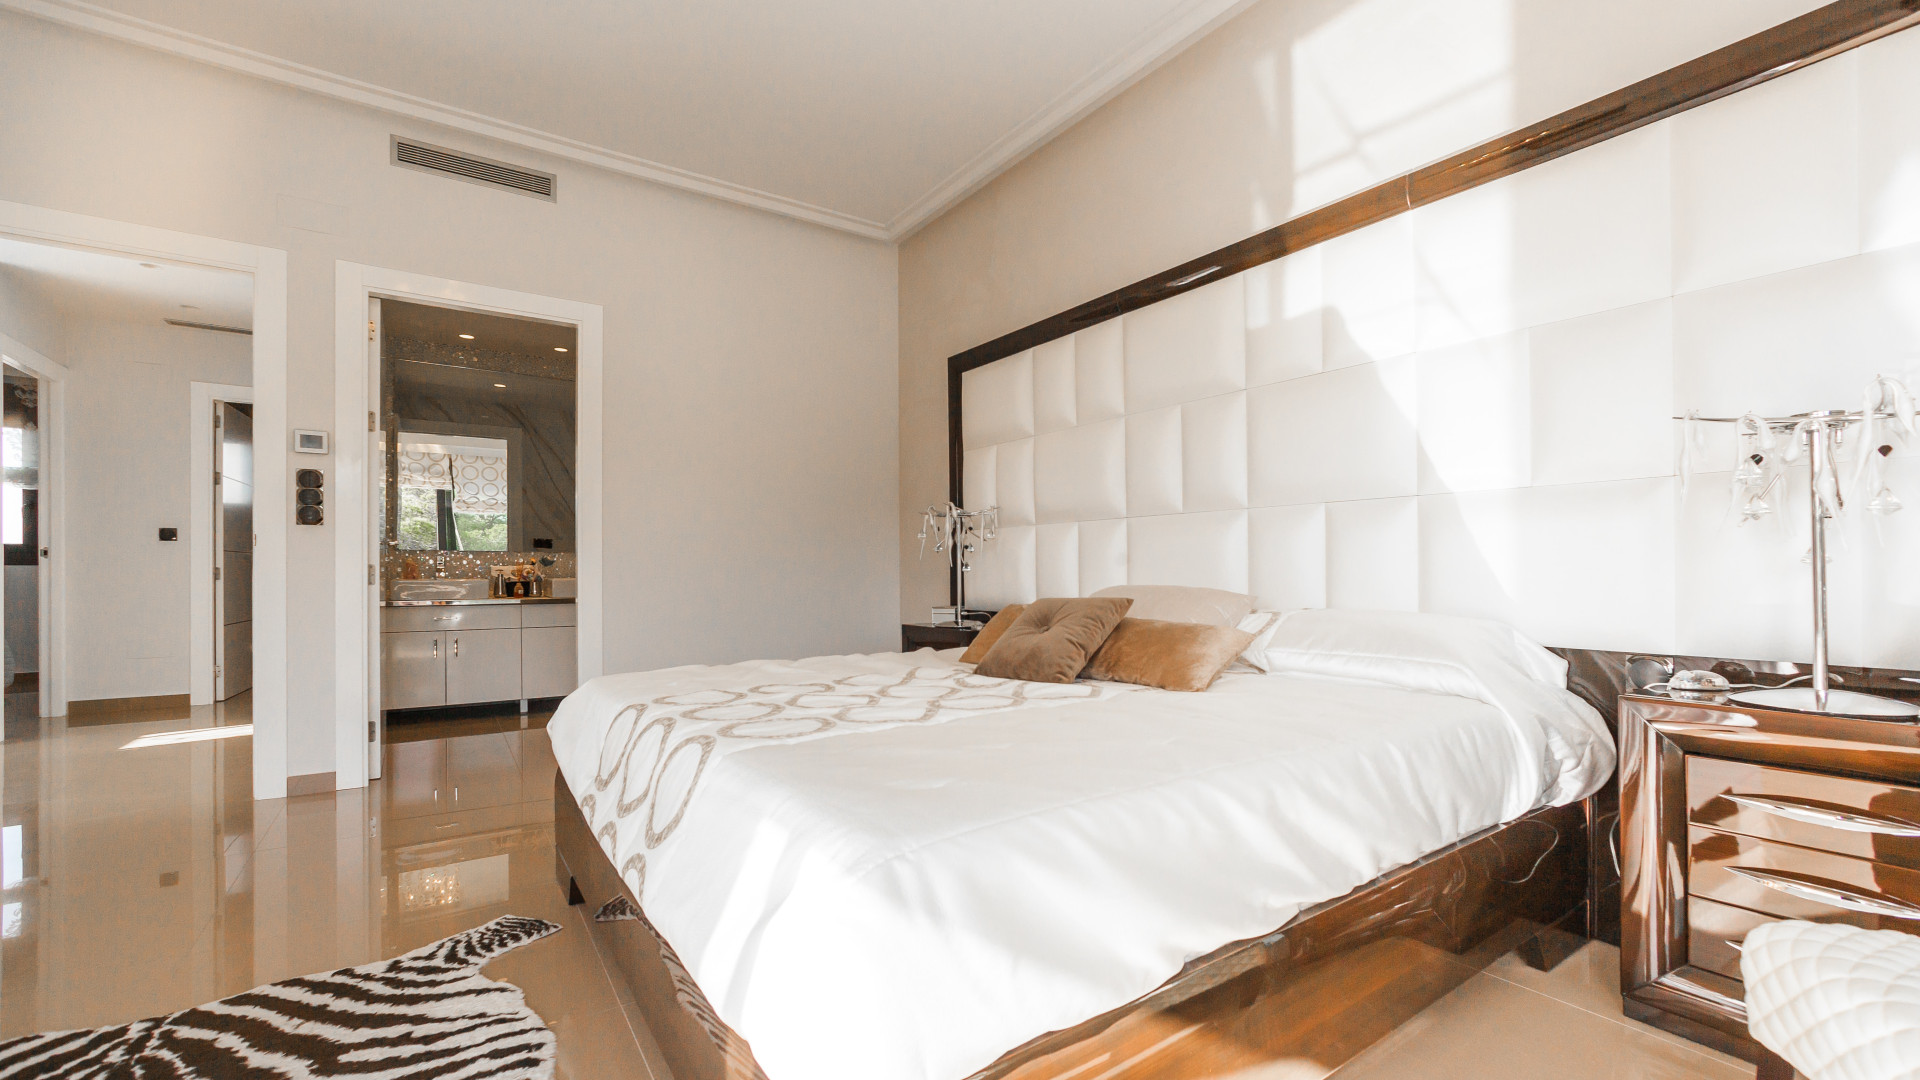 Hôtel à Amiens : faites-vous accompagner d'un expert pour éradiquer les punaises de lit !